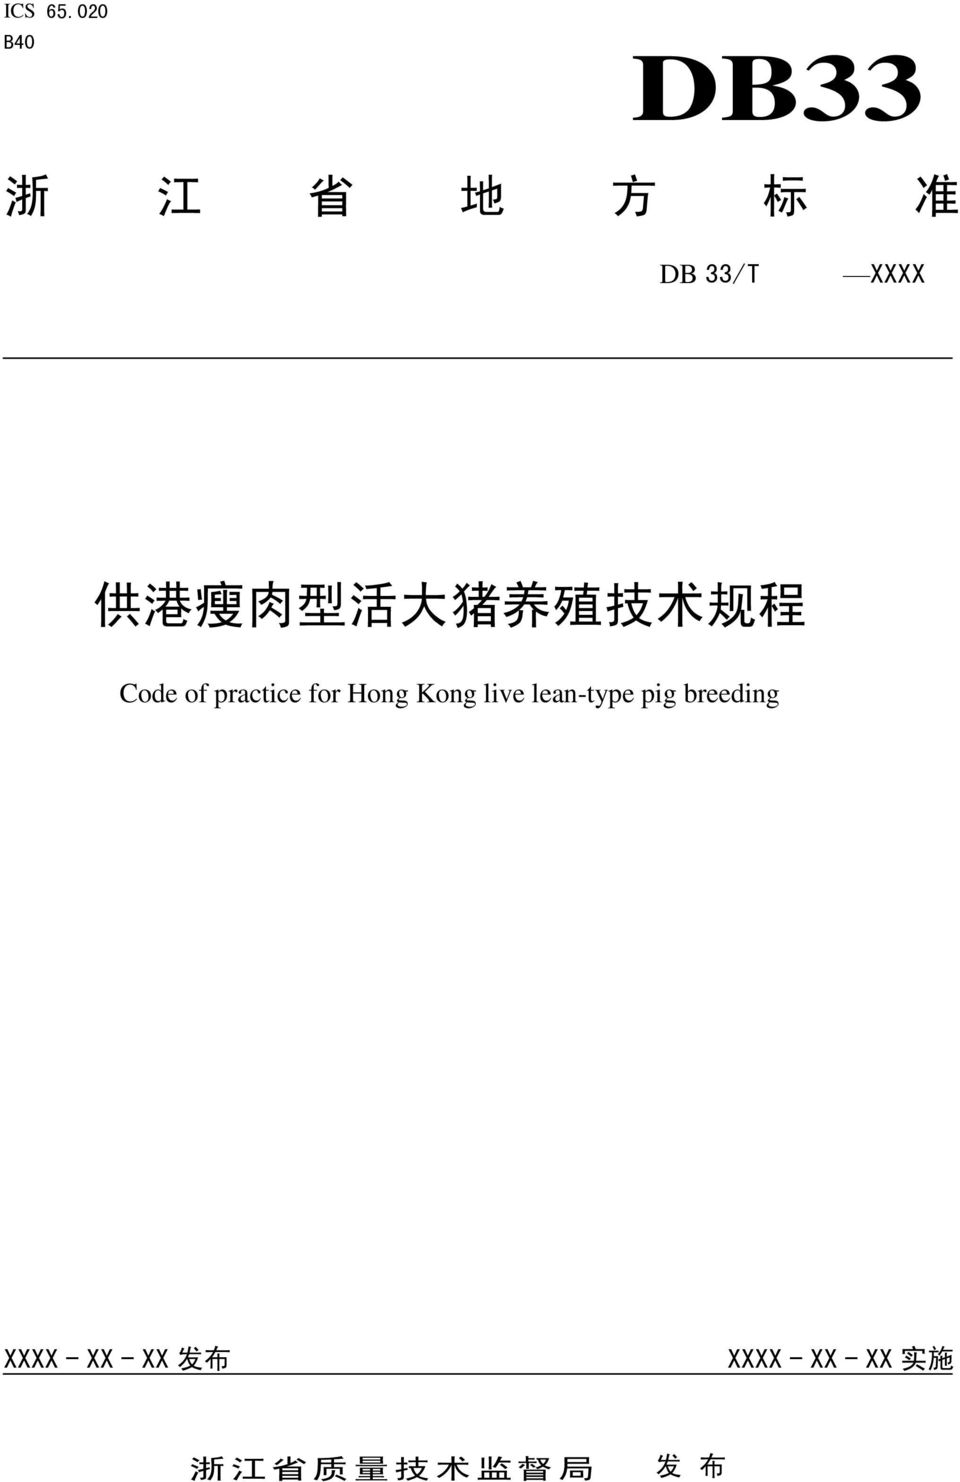 型 活 大 猪 养 殖 技 术 规 程 Code of practice for Hong